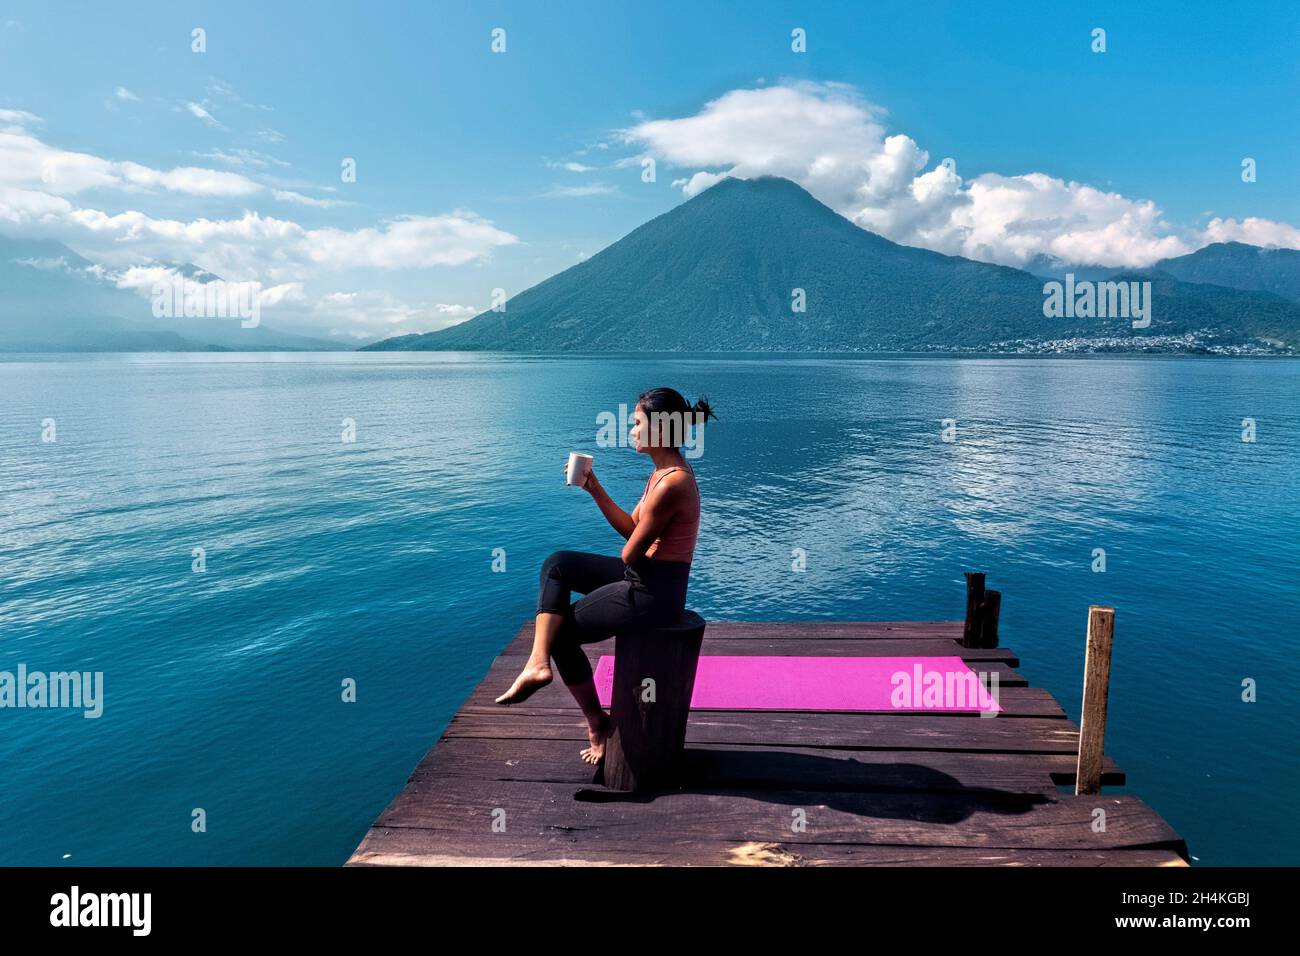 Morning coffee on the dock, San Marcos, Lake Atitlan, Guatemala. Stock Photo